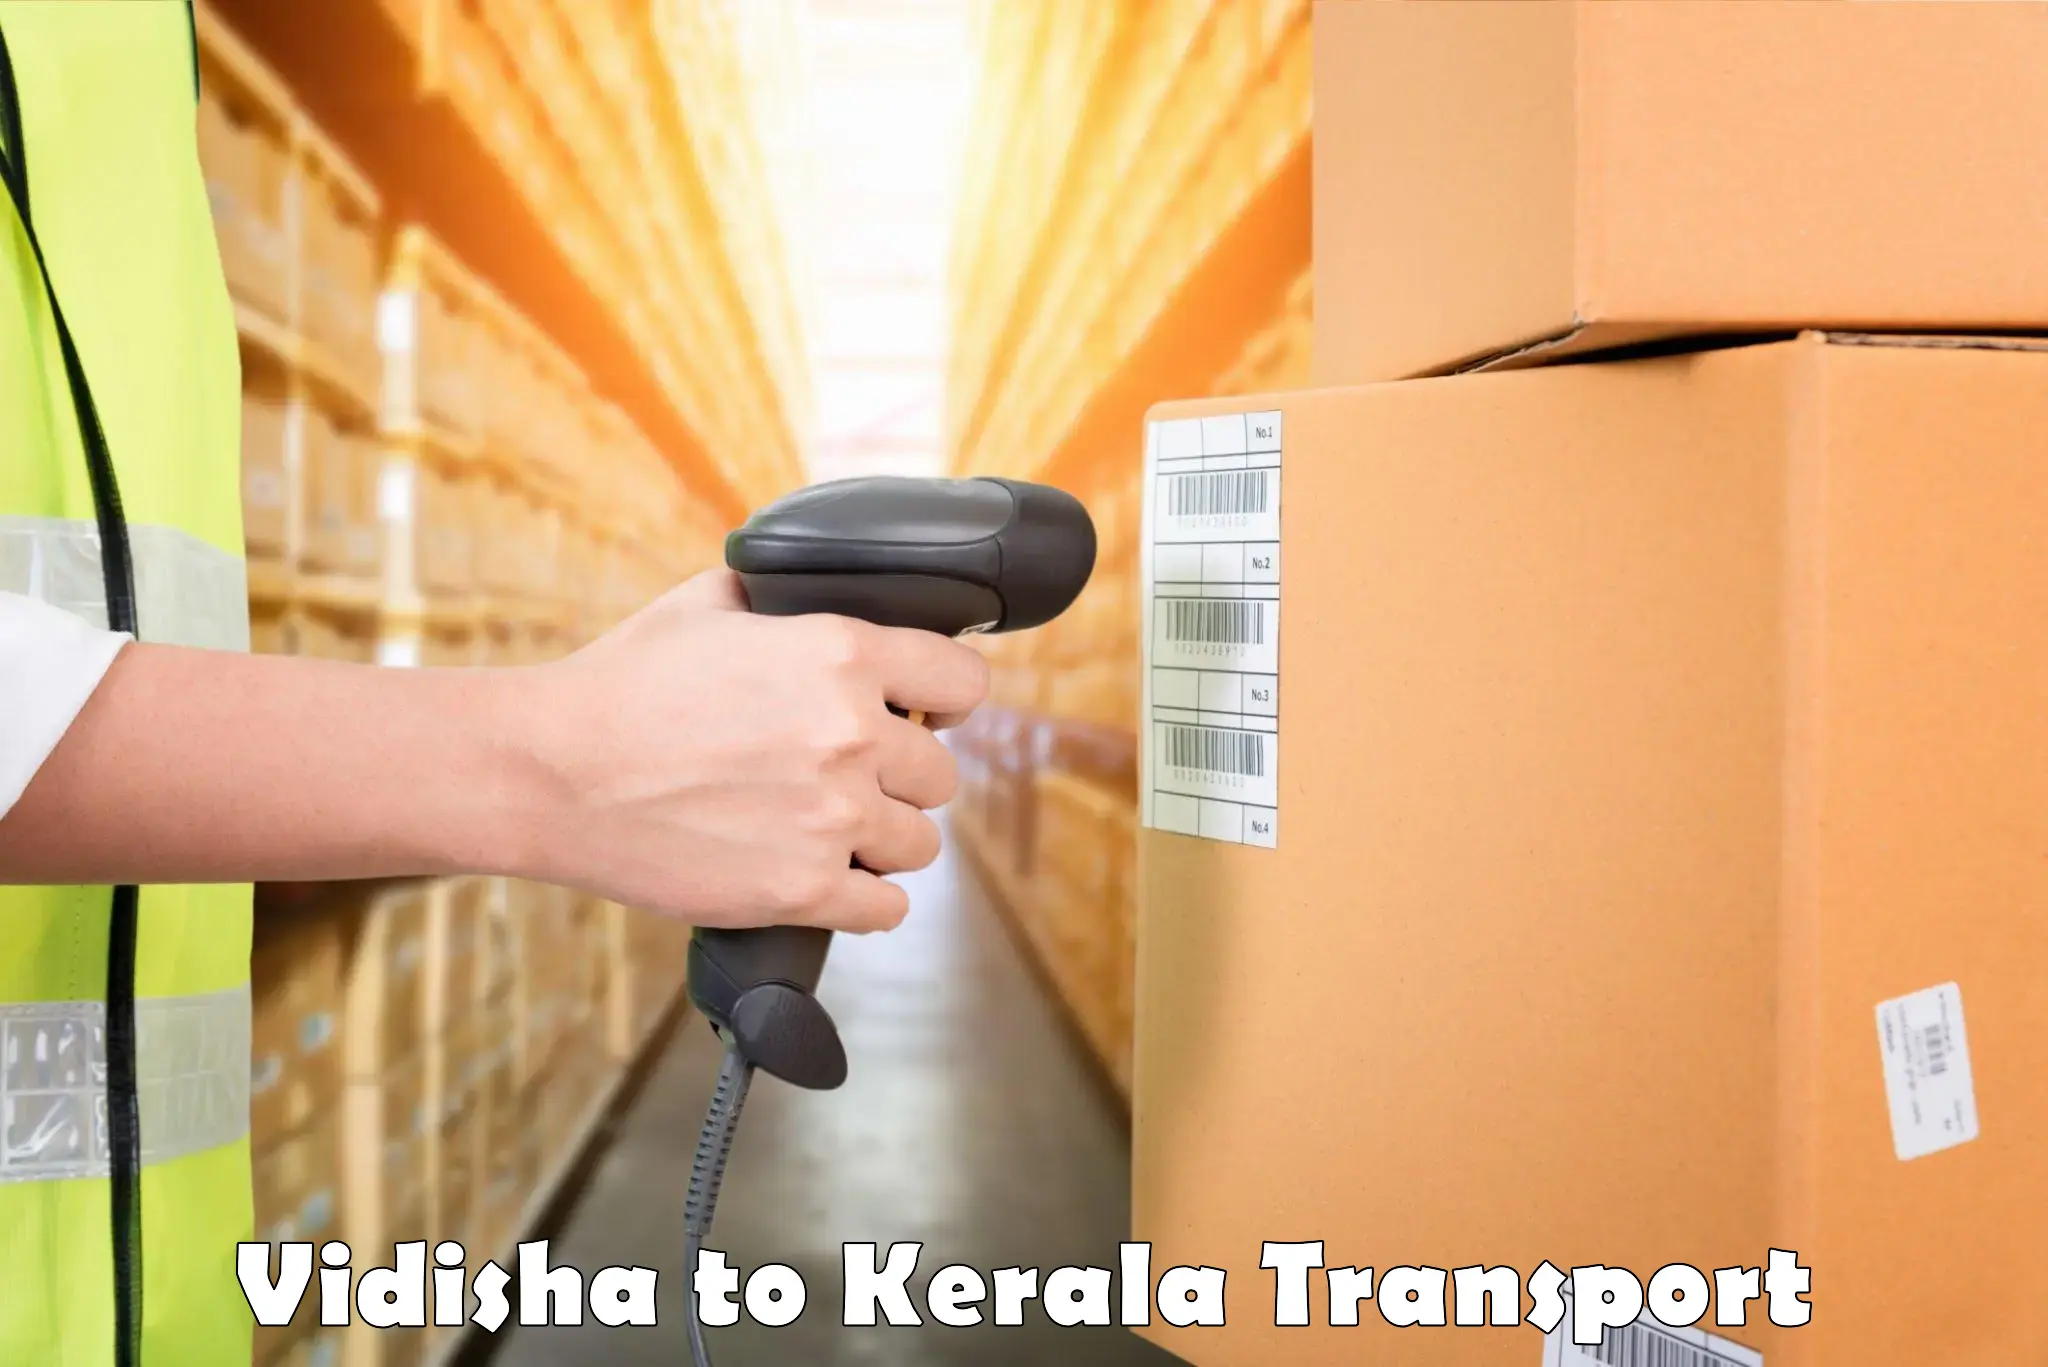 All India transport service Vidisha to Pathanamthitta